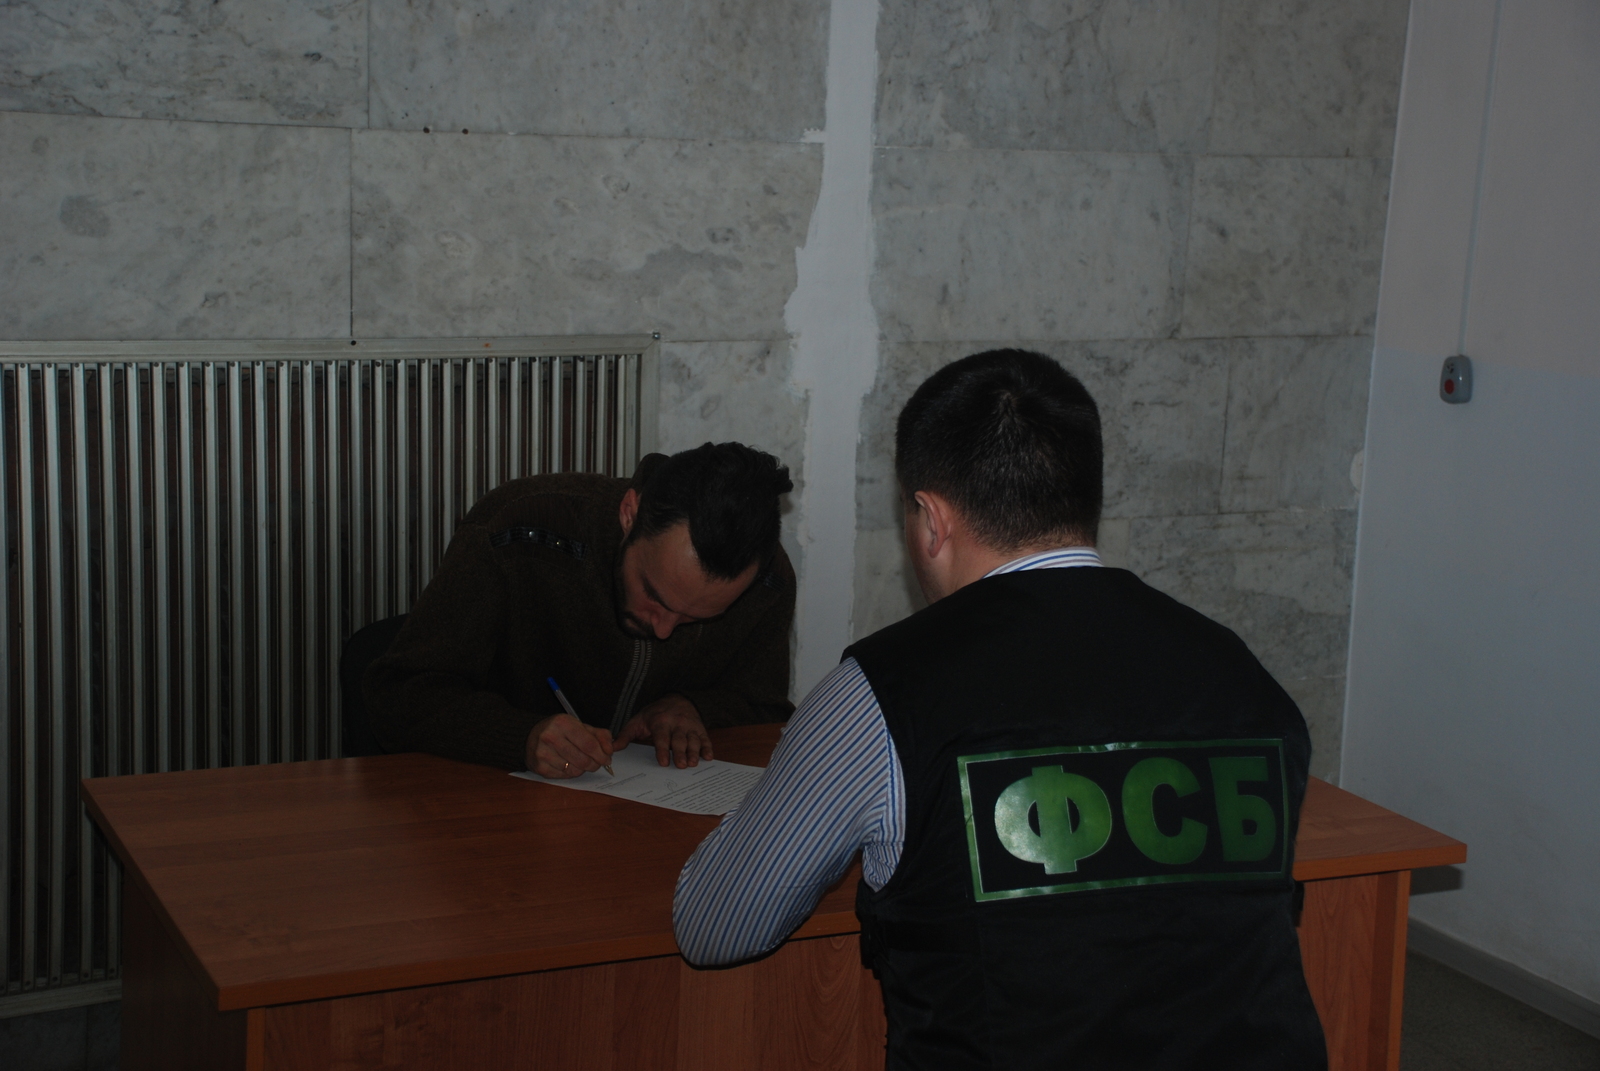 Фото и видео предоставлены ведомством ФСБ Башкирии предупредила сотрудника ОВД об ответственности за разглашение гостайны